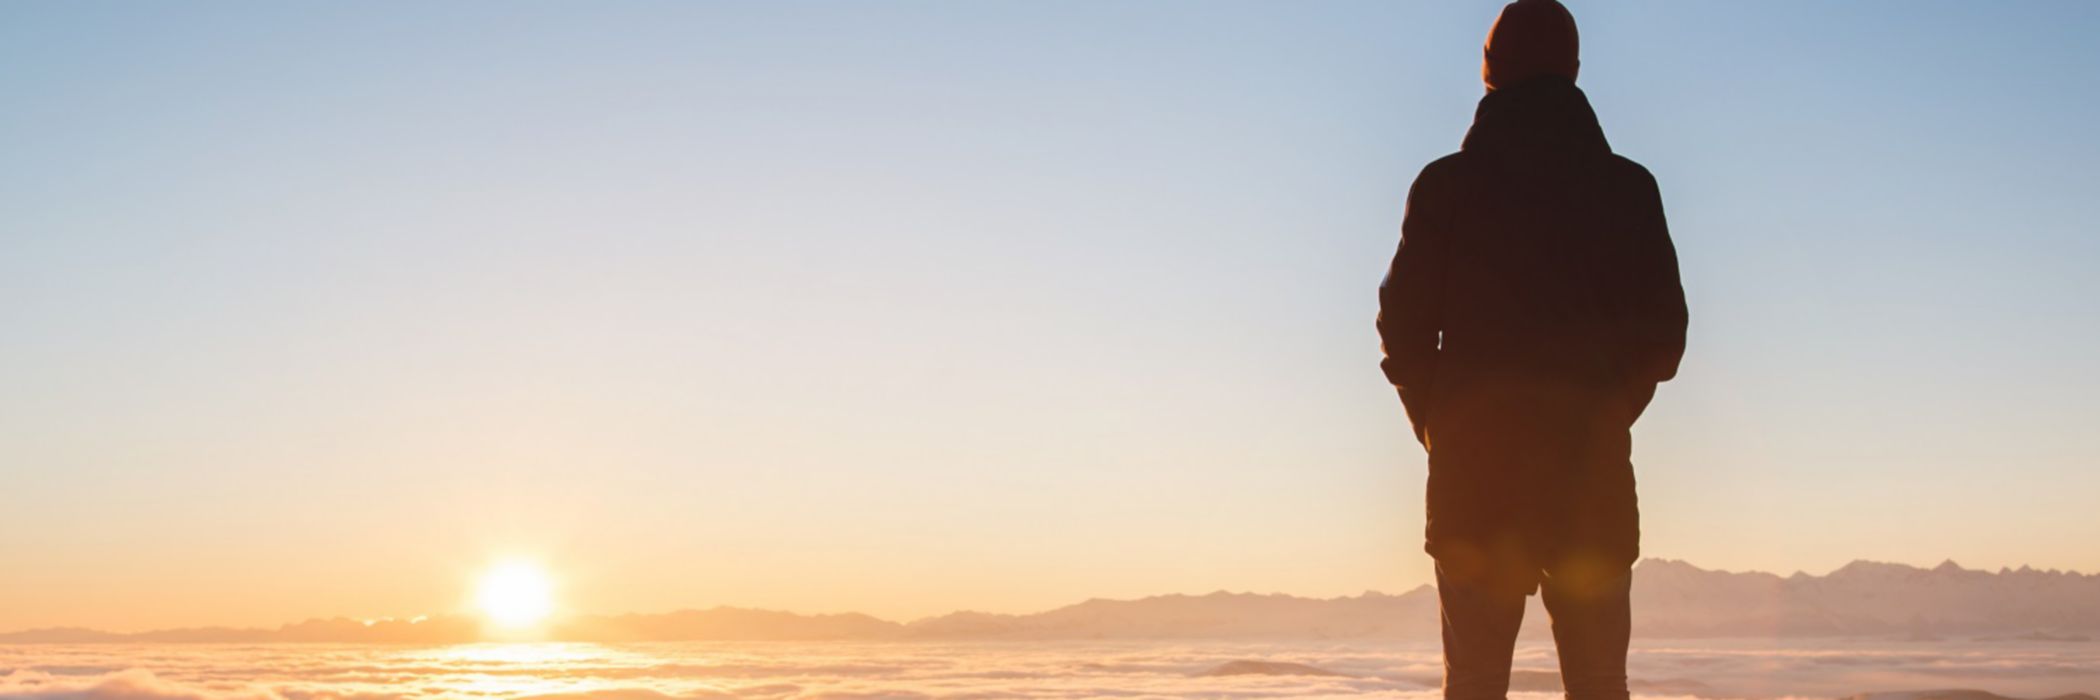 Man standing on mountain peak watching sunset